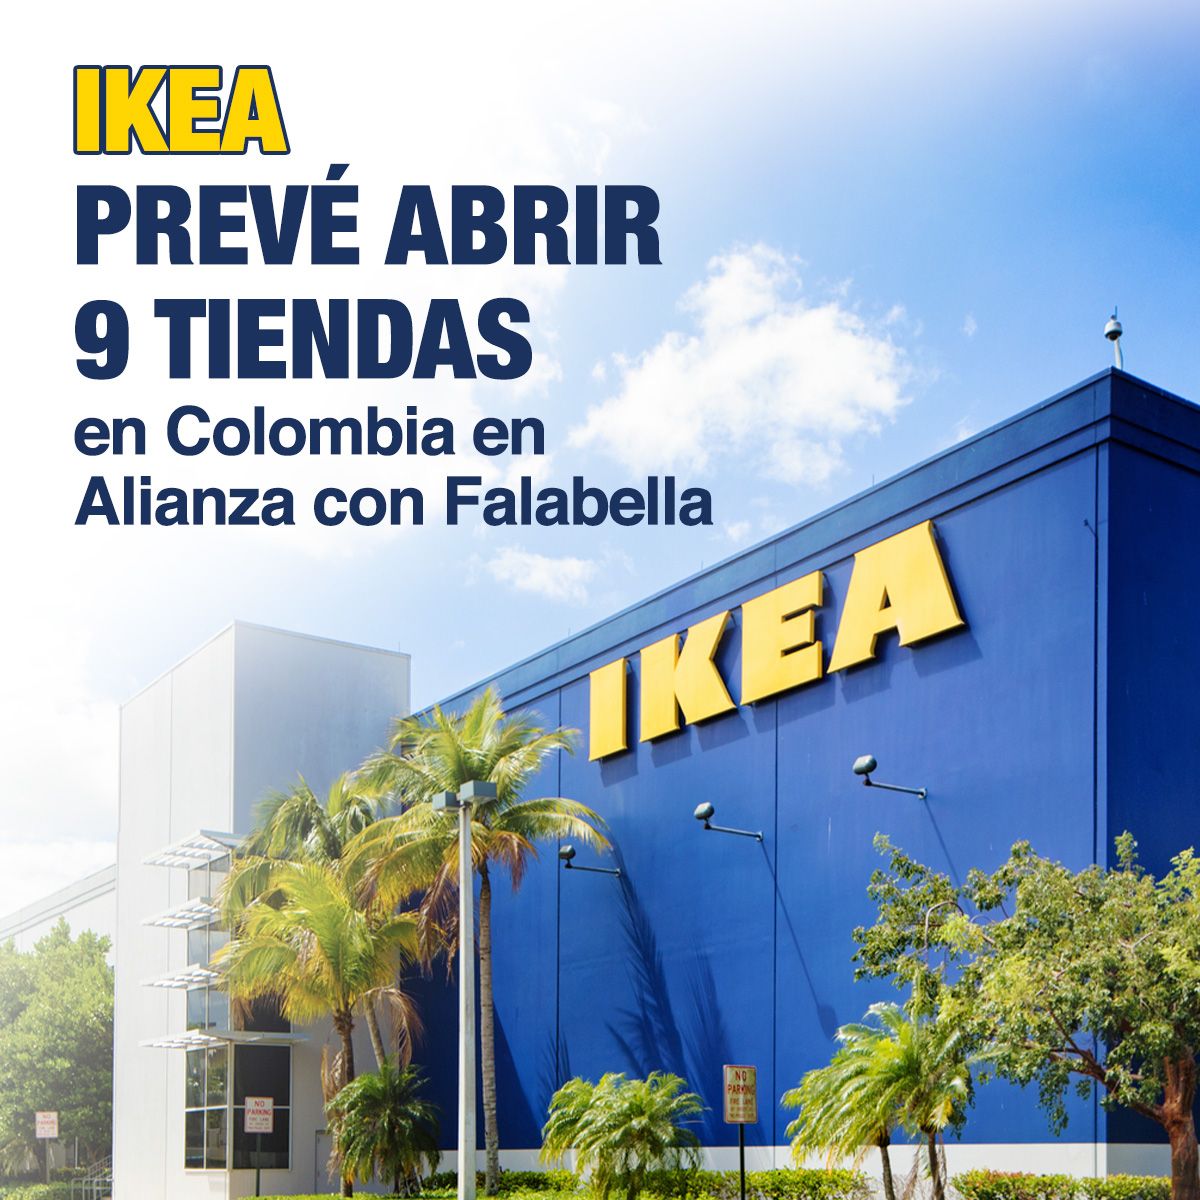 Ikea Prevé Abrir 9 Tiendas en Colombia en Alianza con Falabella